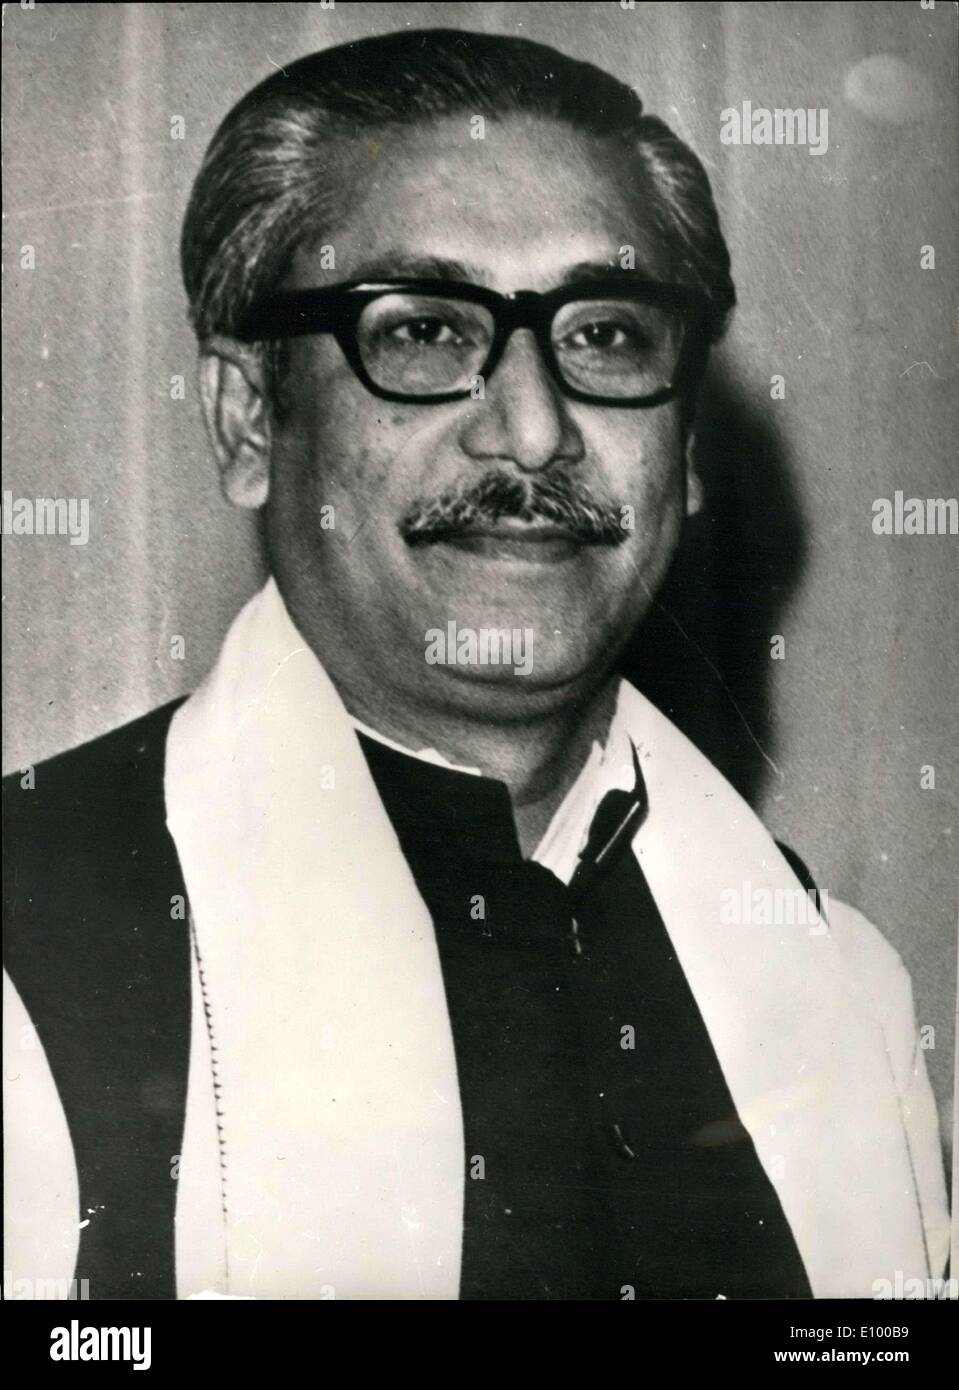 Jan. 05, 1972 - Bangladesh Leader - Sheikh Mujibur Rahman. Photo shows ...